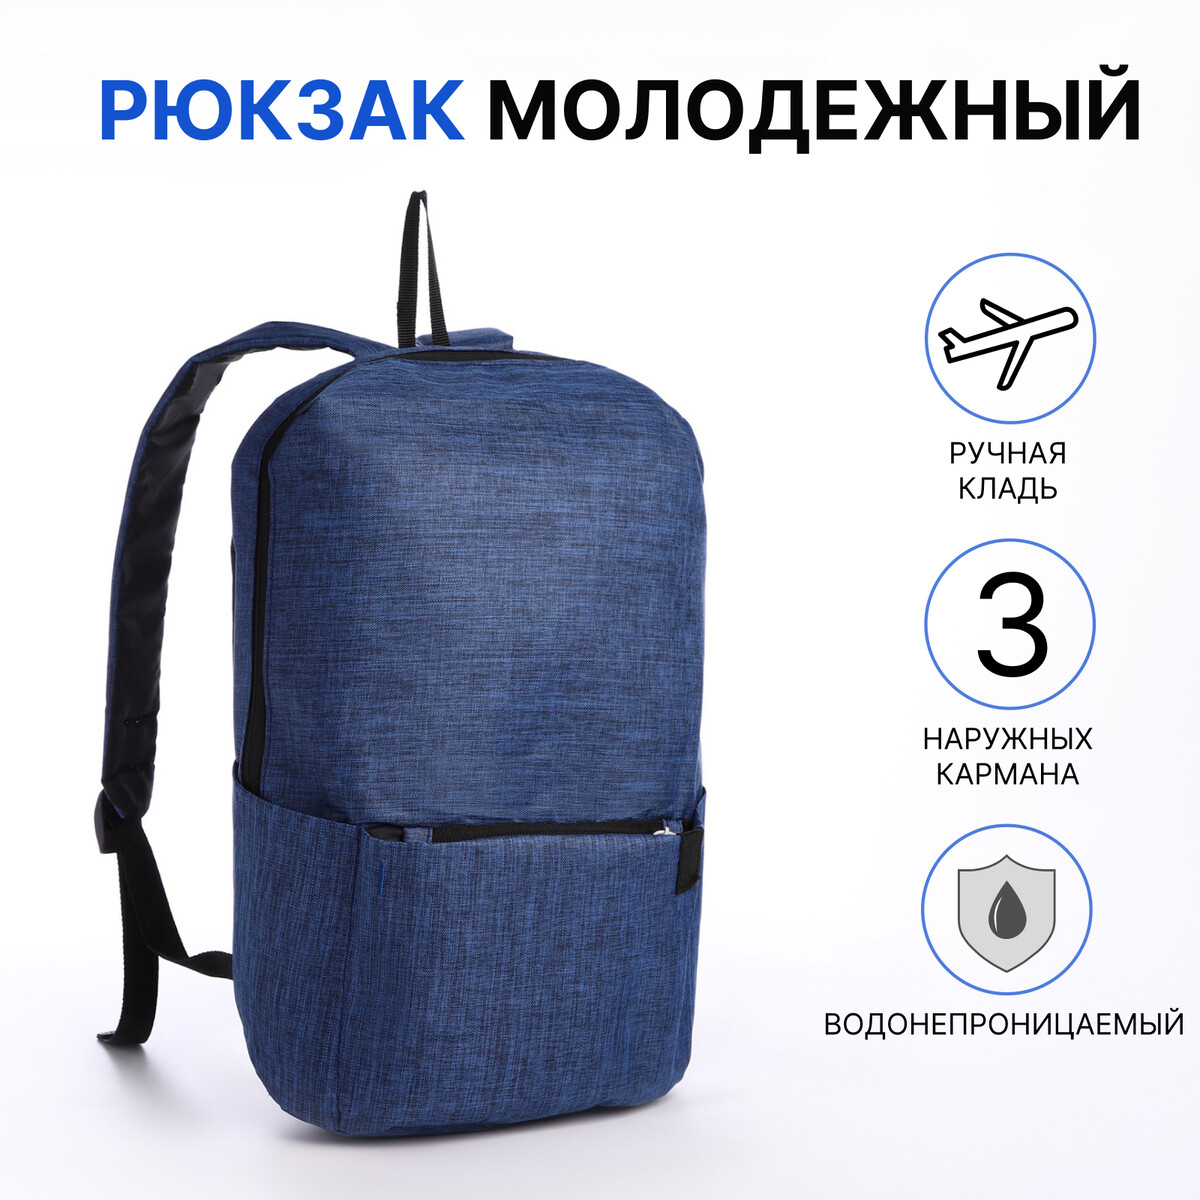 Рюкзак молодежный из текстиля на молнии, водонепроницаемый, наружный карман, цвет синий рюкзак молодежный grizzly с карманом для ноутбука 15 ru 432 4 3 синий